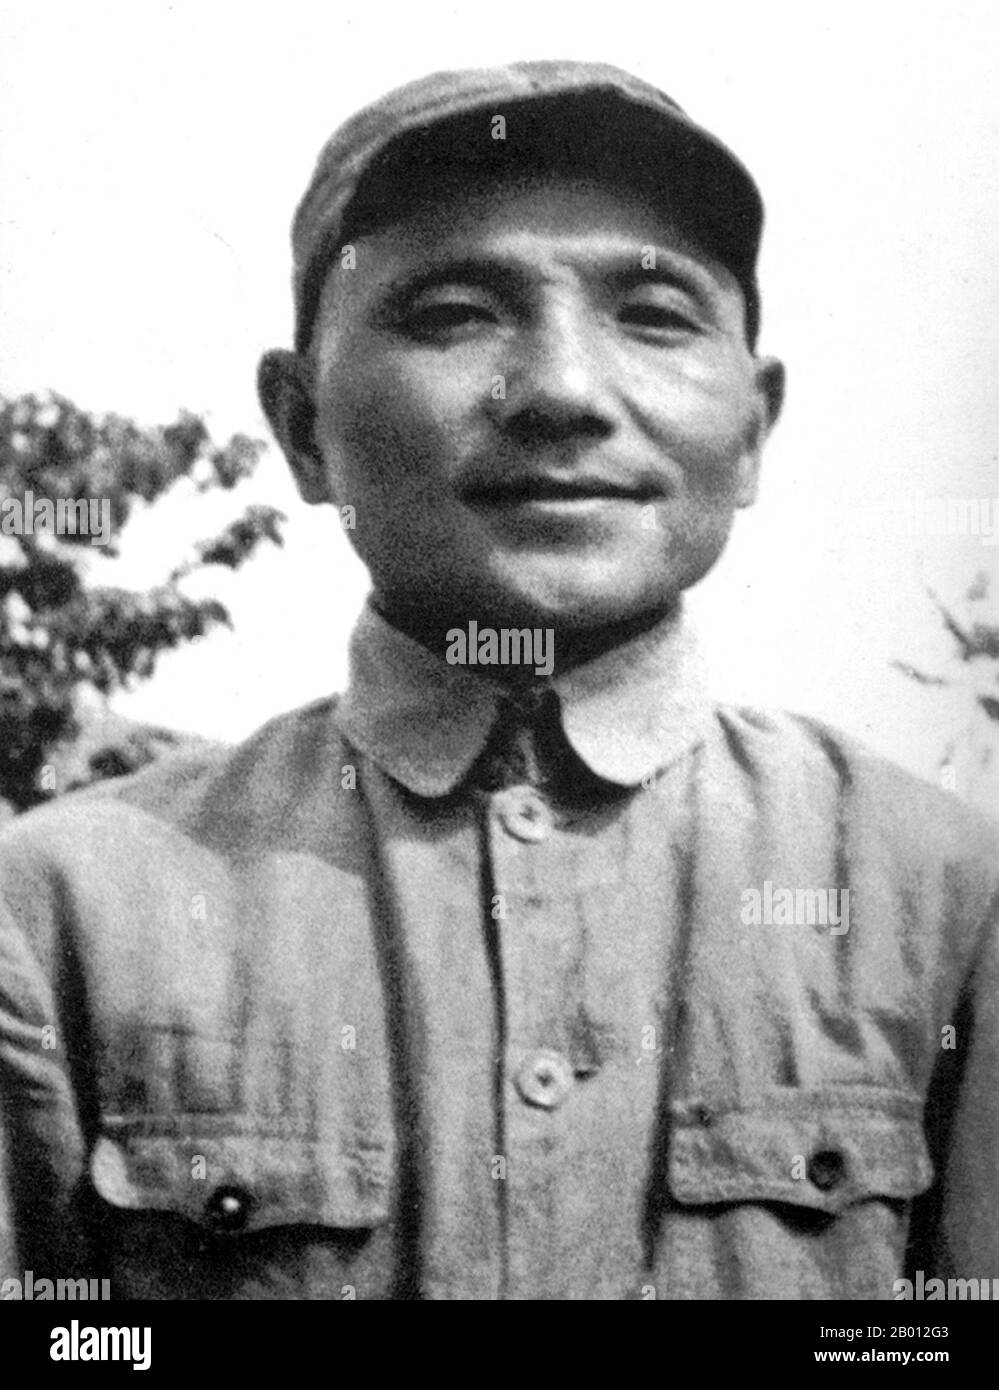 China: Deng Xiaoping (Teng Hsiao-p'ing, 1904-1997) in Yan'an (Yenan) c. 1936. Deng Xiaoping (Teng Hsiao-p'ing; 22. August 1904 – 19. Februar 1997) war ein chinesischer Politiker, Staatsmann, Theoretiker und Diplomat. Als Führer der Kommunistischen Partei Chinas war Deng ein Reformer, der China zu einer Marktwirtschaft führte. Obwohl Deng nie als Staatschef, Regierungschef oder Generalsekretär der Kommunistischen Partei Chinas (historisch die höchste Position im kommunistischen China) im Amt war, diente er dennoch von 1978 bis 1992 als oberster Führer der Volksrepublik China. Stockfoto